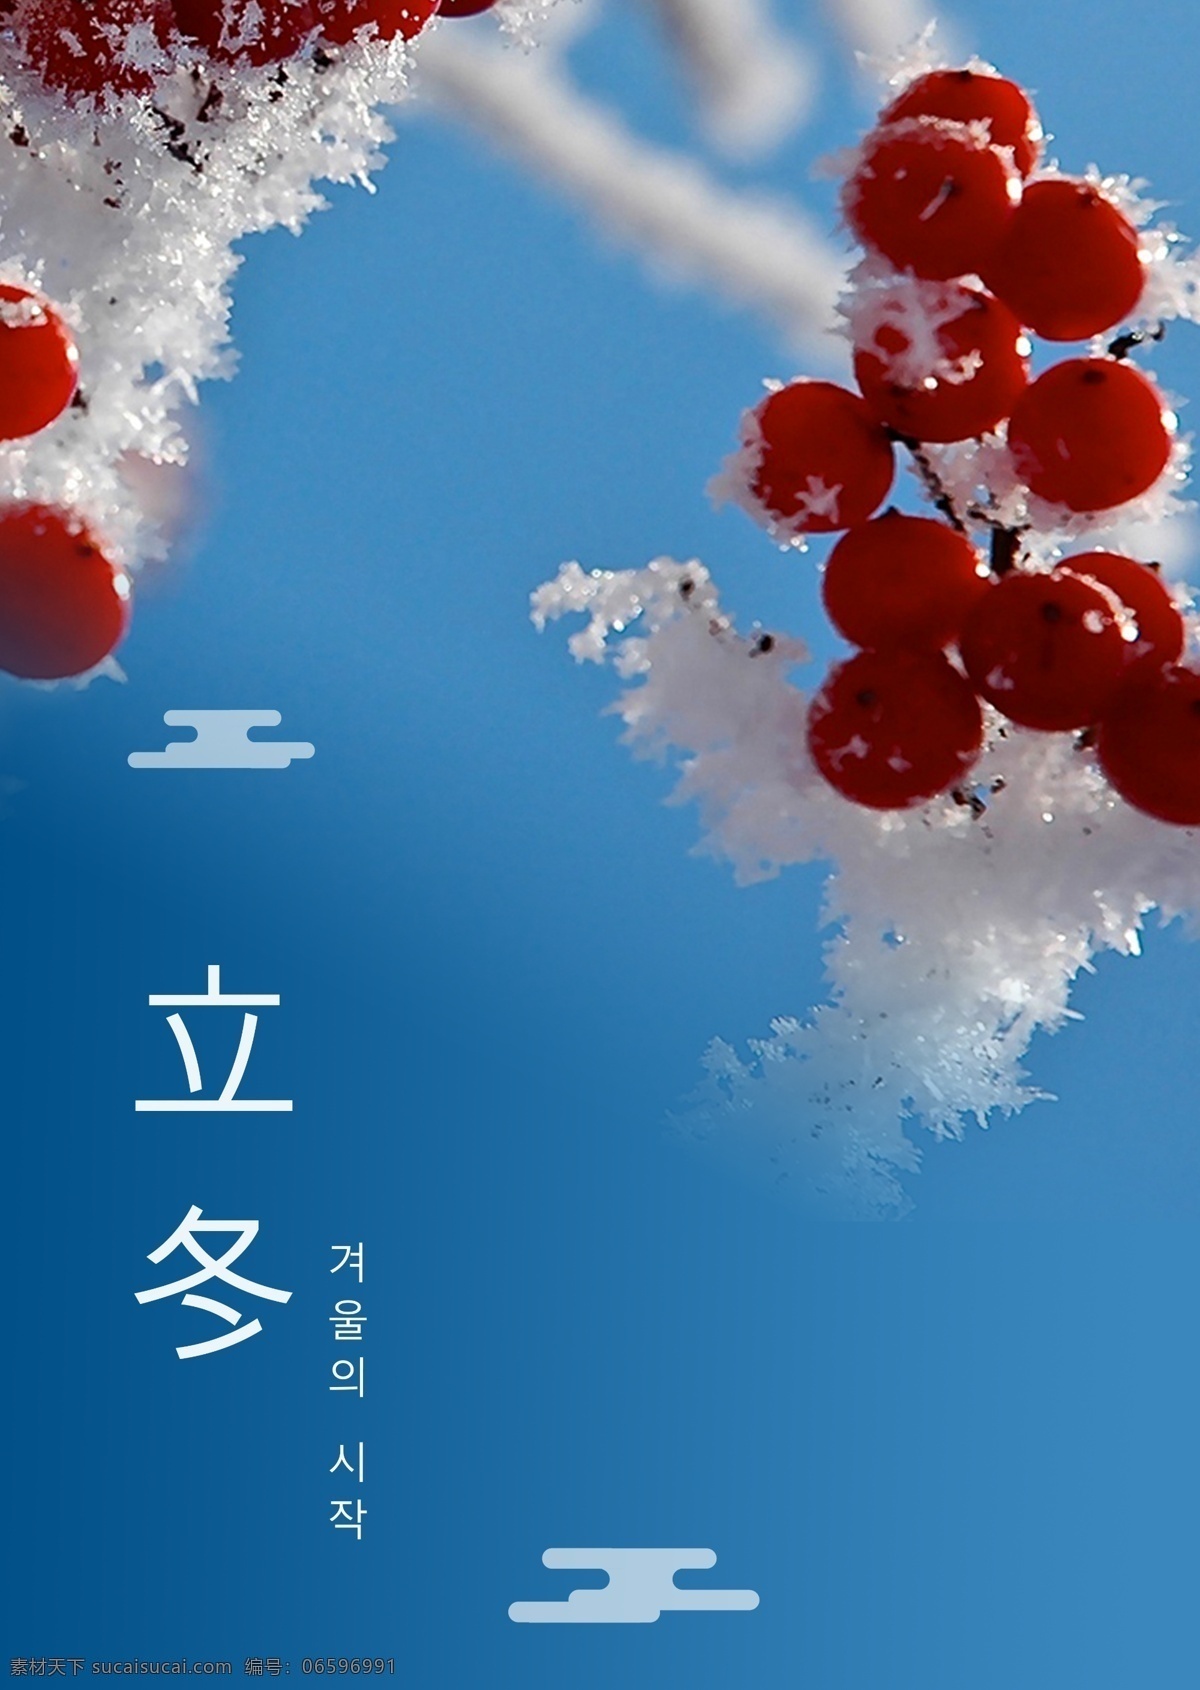 蓝色 简单 花树 雪 风景 冬天 海报 墨 冬季 朝鲜的 中文 英语 空白 美丽 灰色 新年 红色